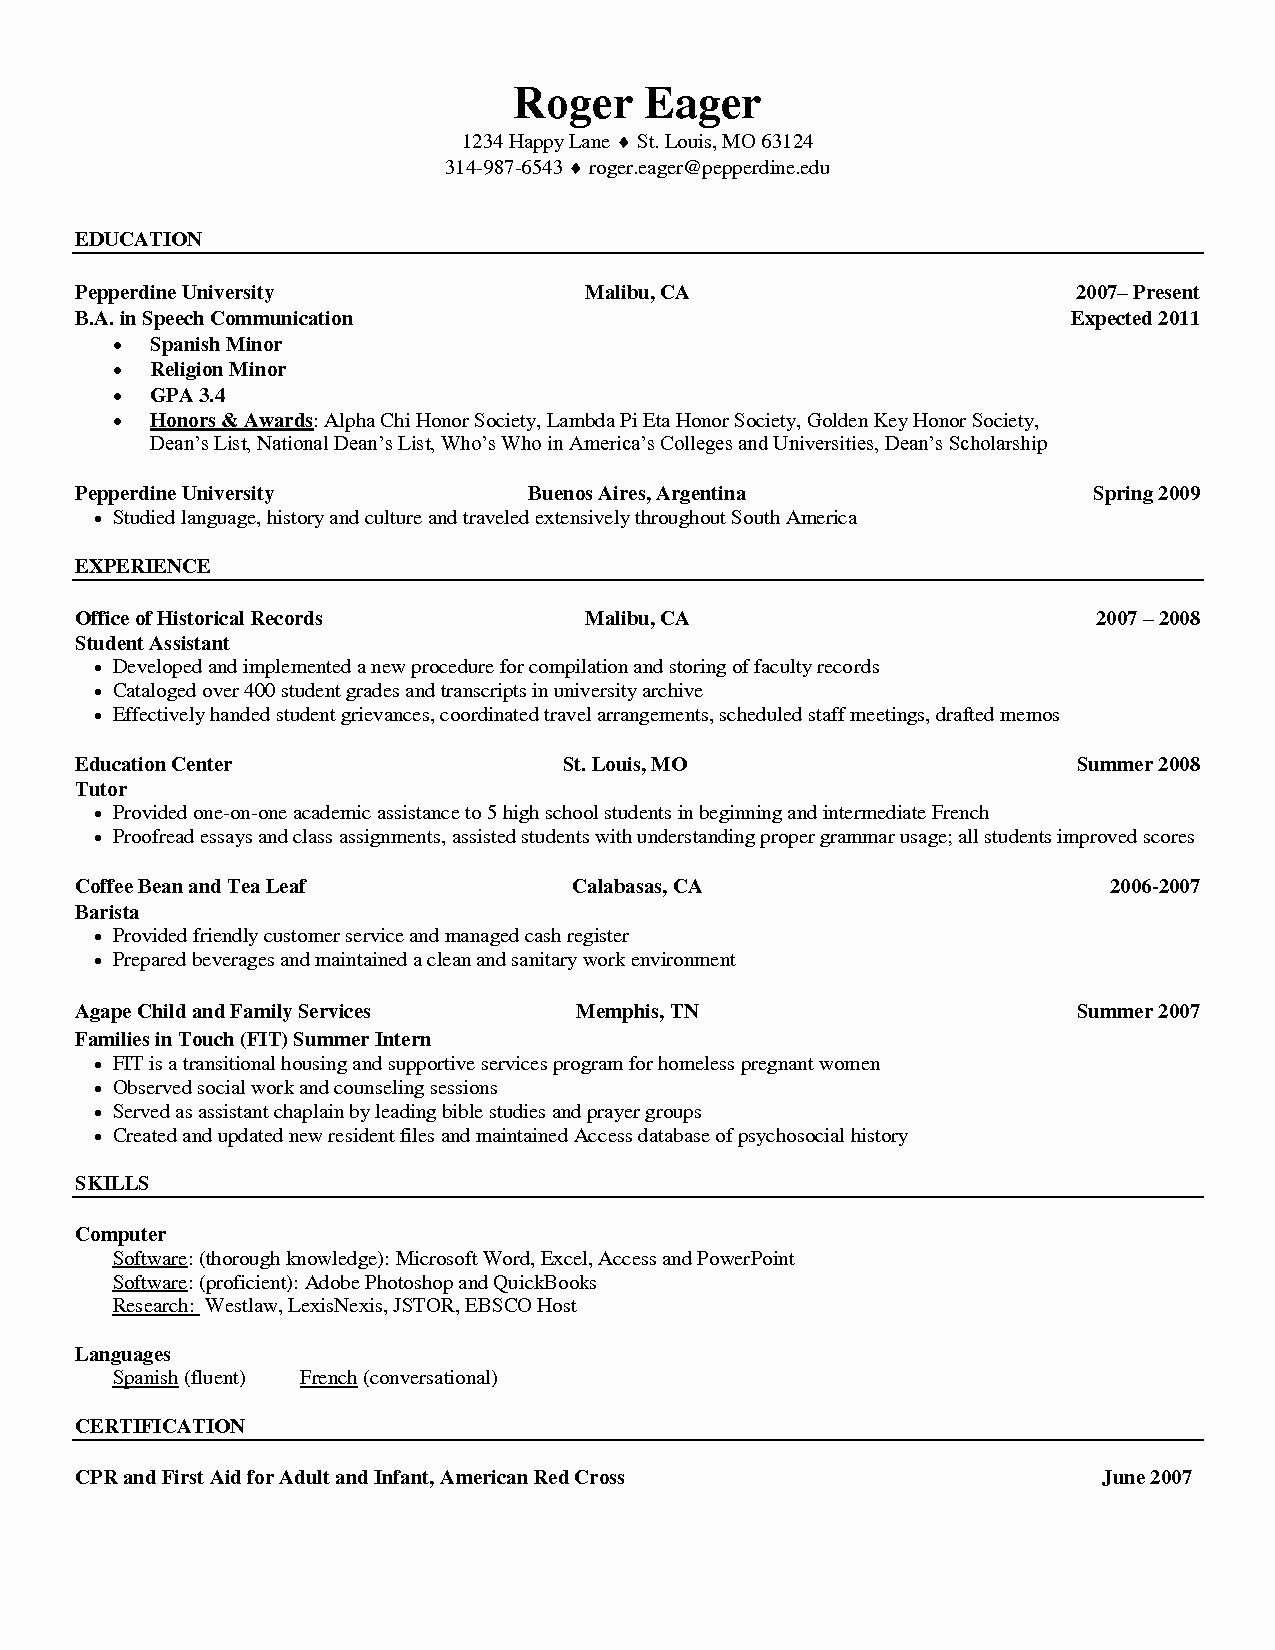 Barista Job Description Resume Samples